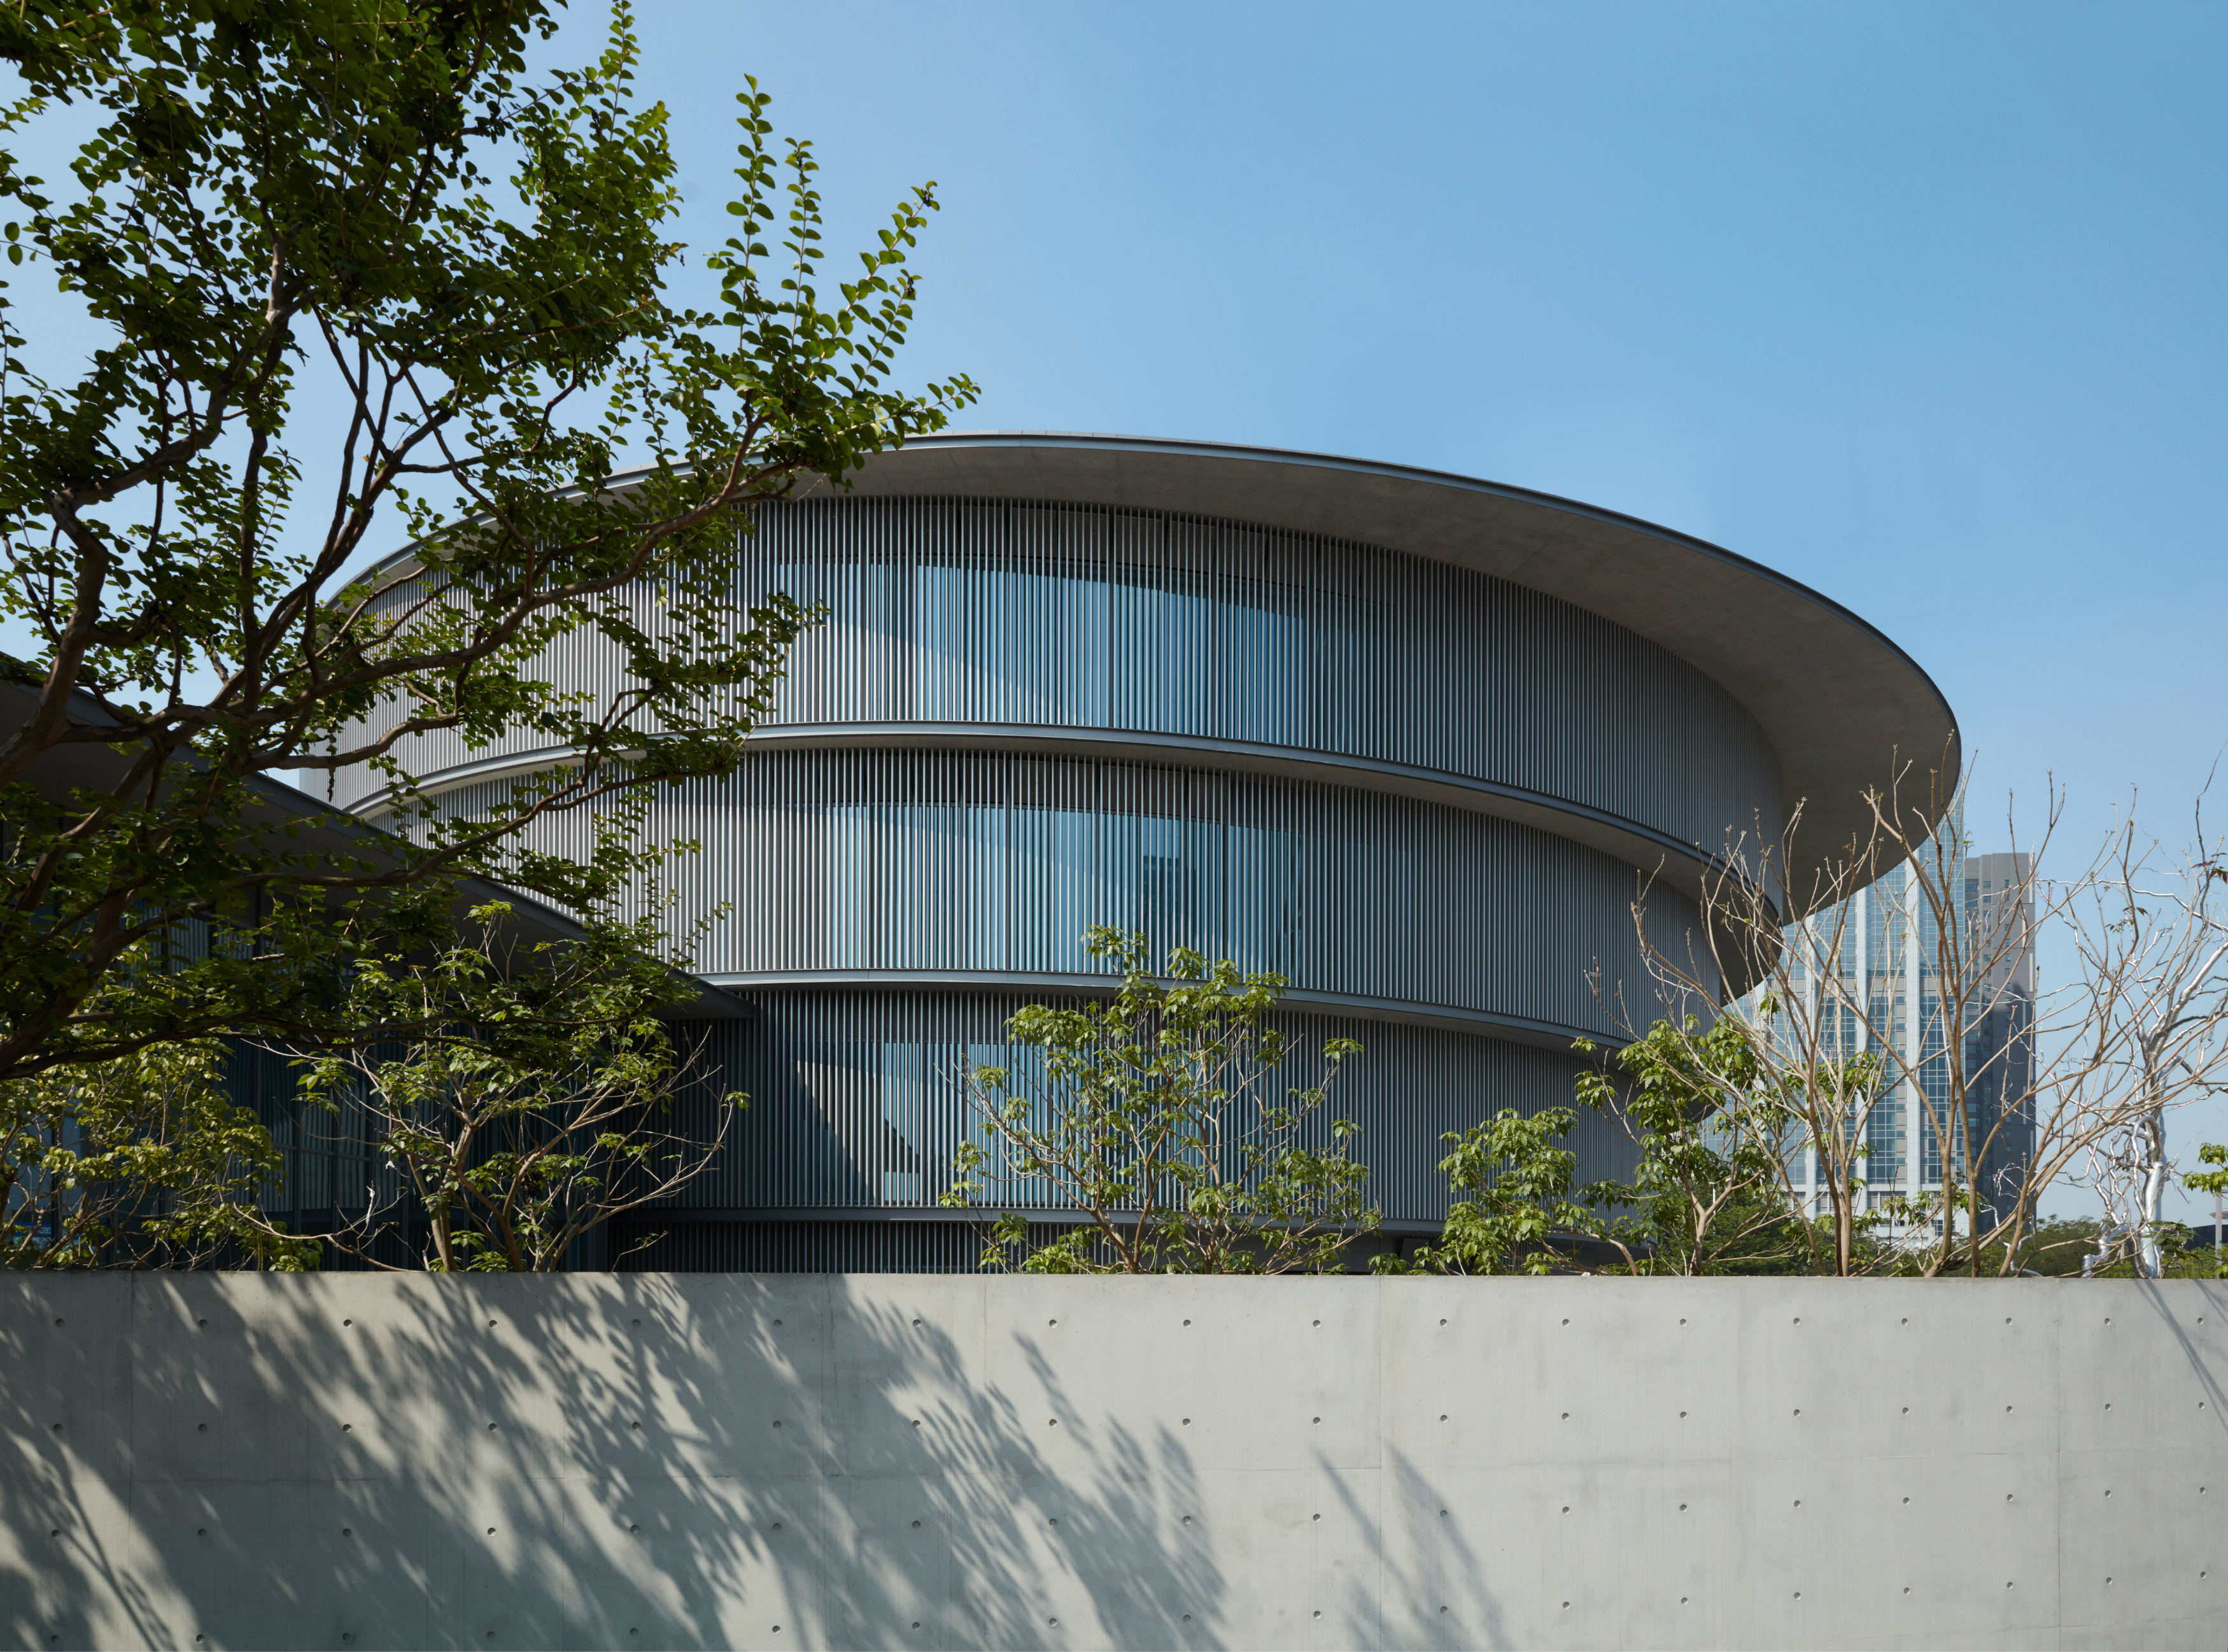 距离广州约一小时车程的顺德北滘和美术馆是由日本知名建筑设计师安藤